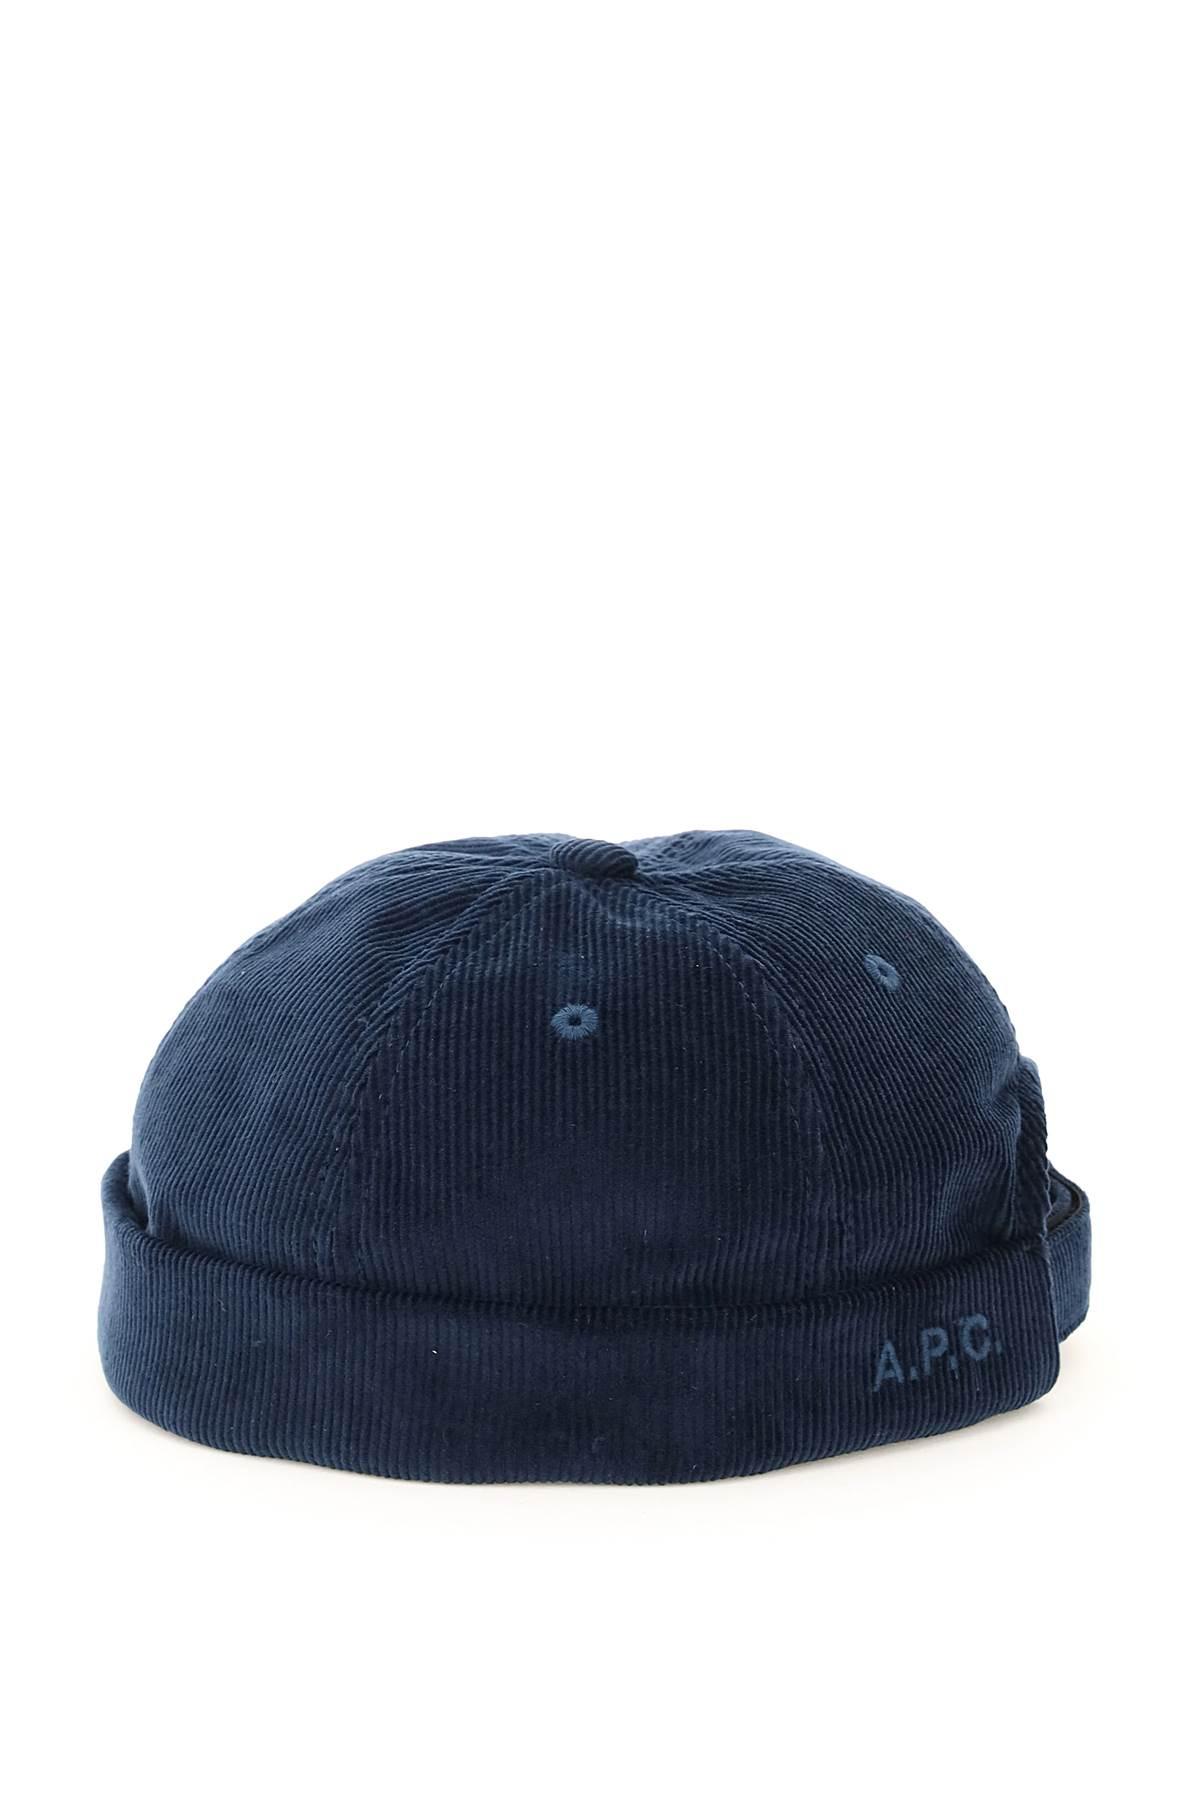 A.P.C. Corduroy Raph Docker Hat in Blue for Men | Lyst